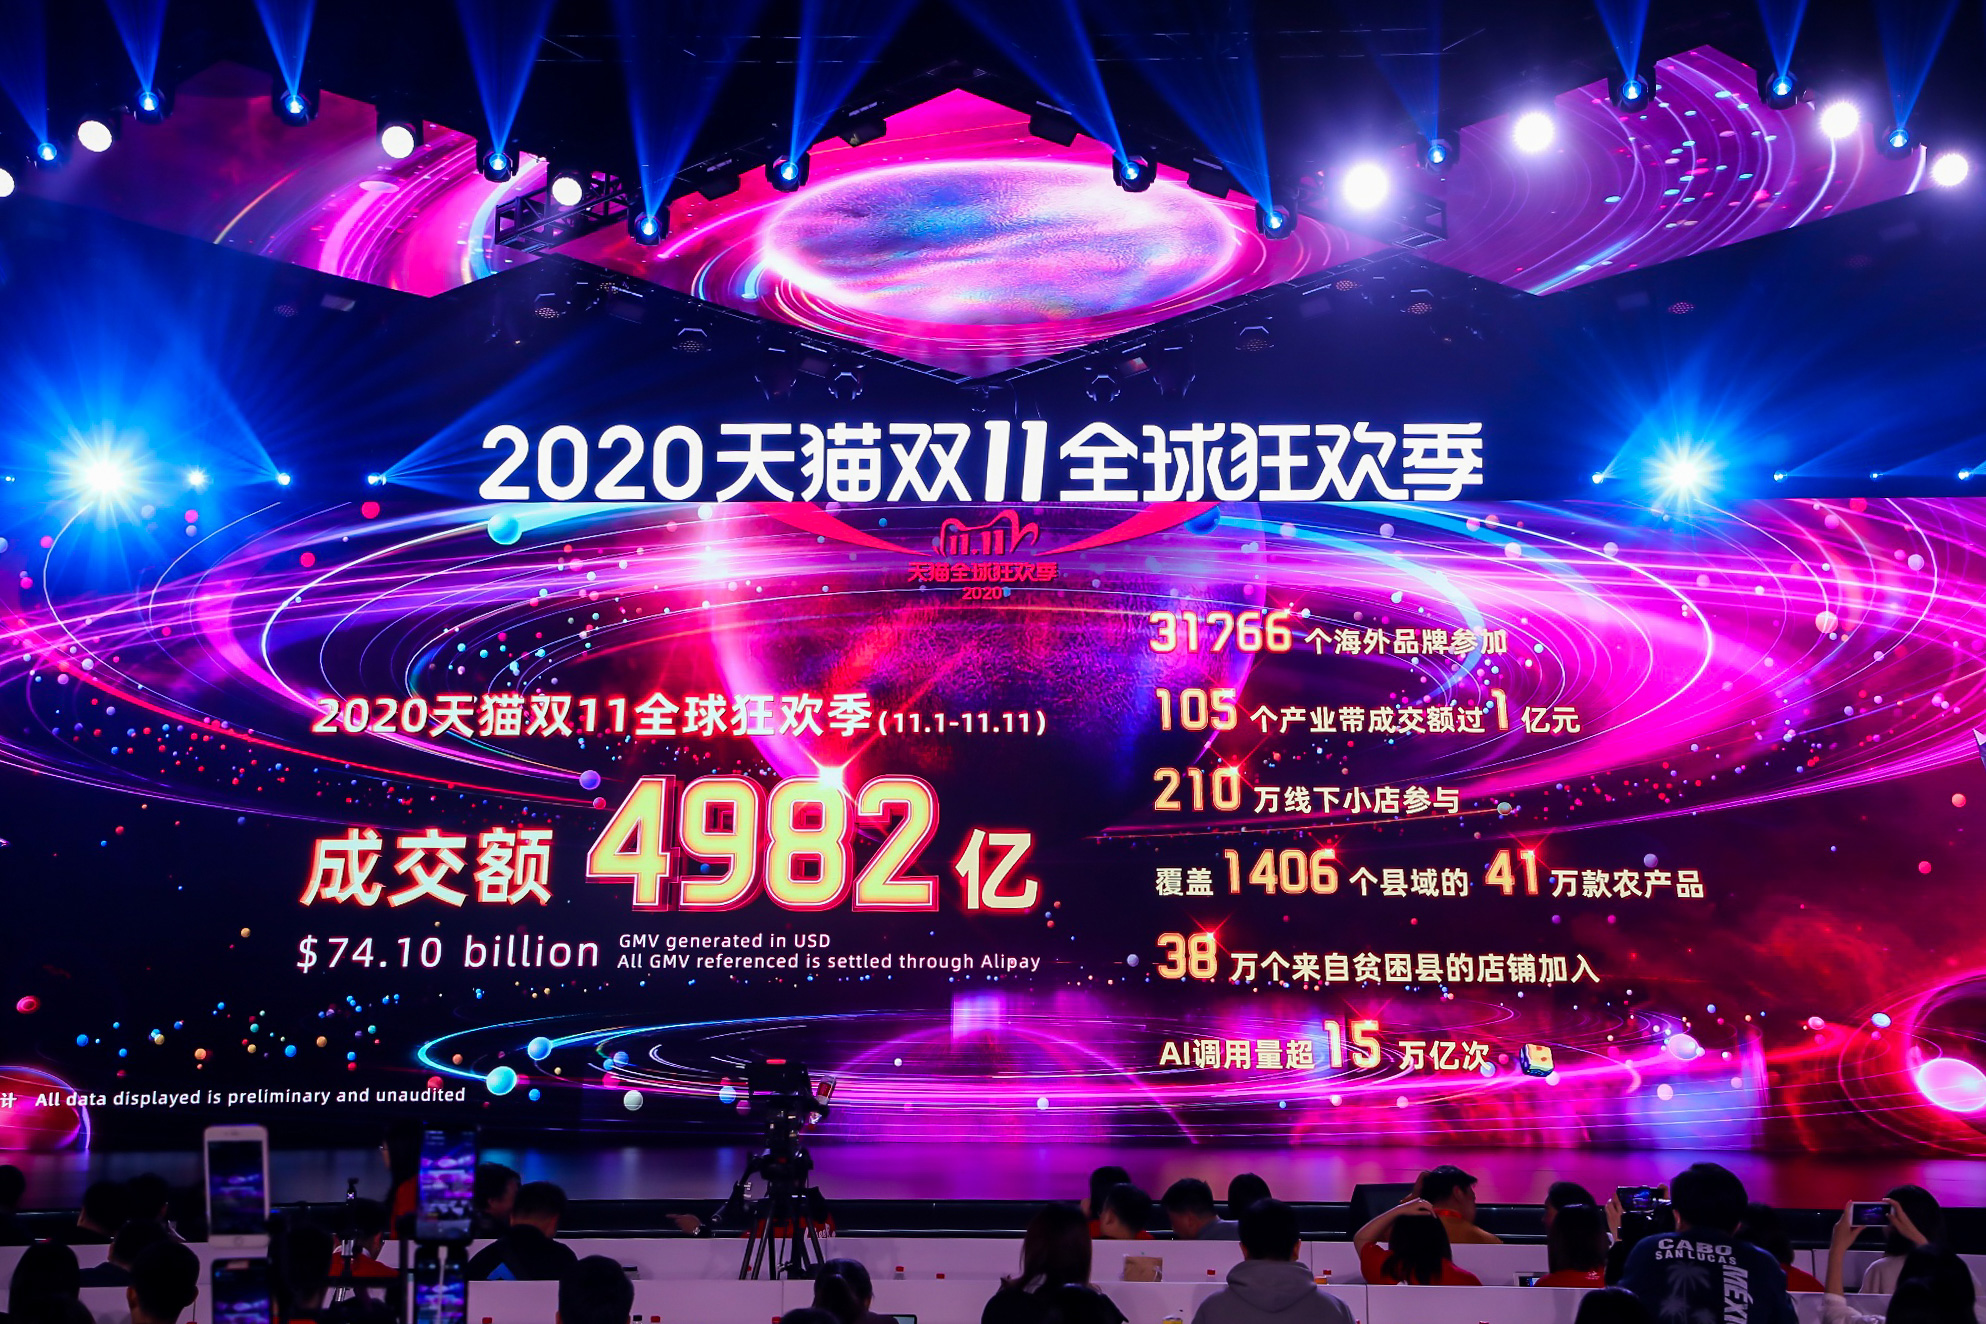 【快讯】2020天猫双11全球狂欢季成交额4982亿!